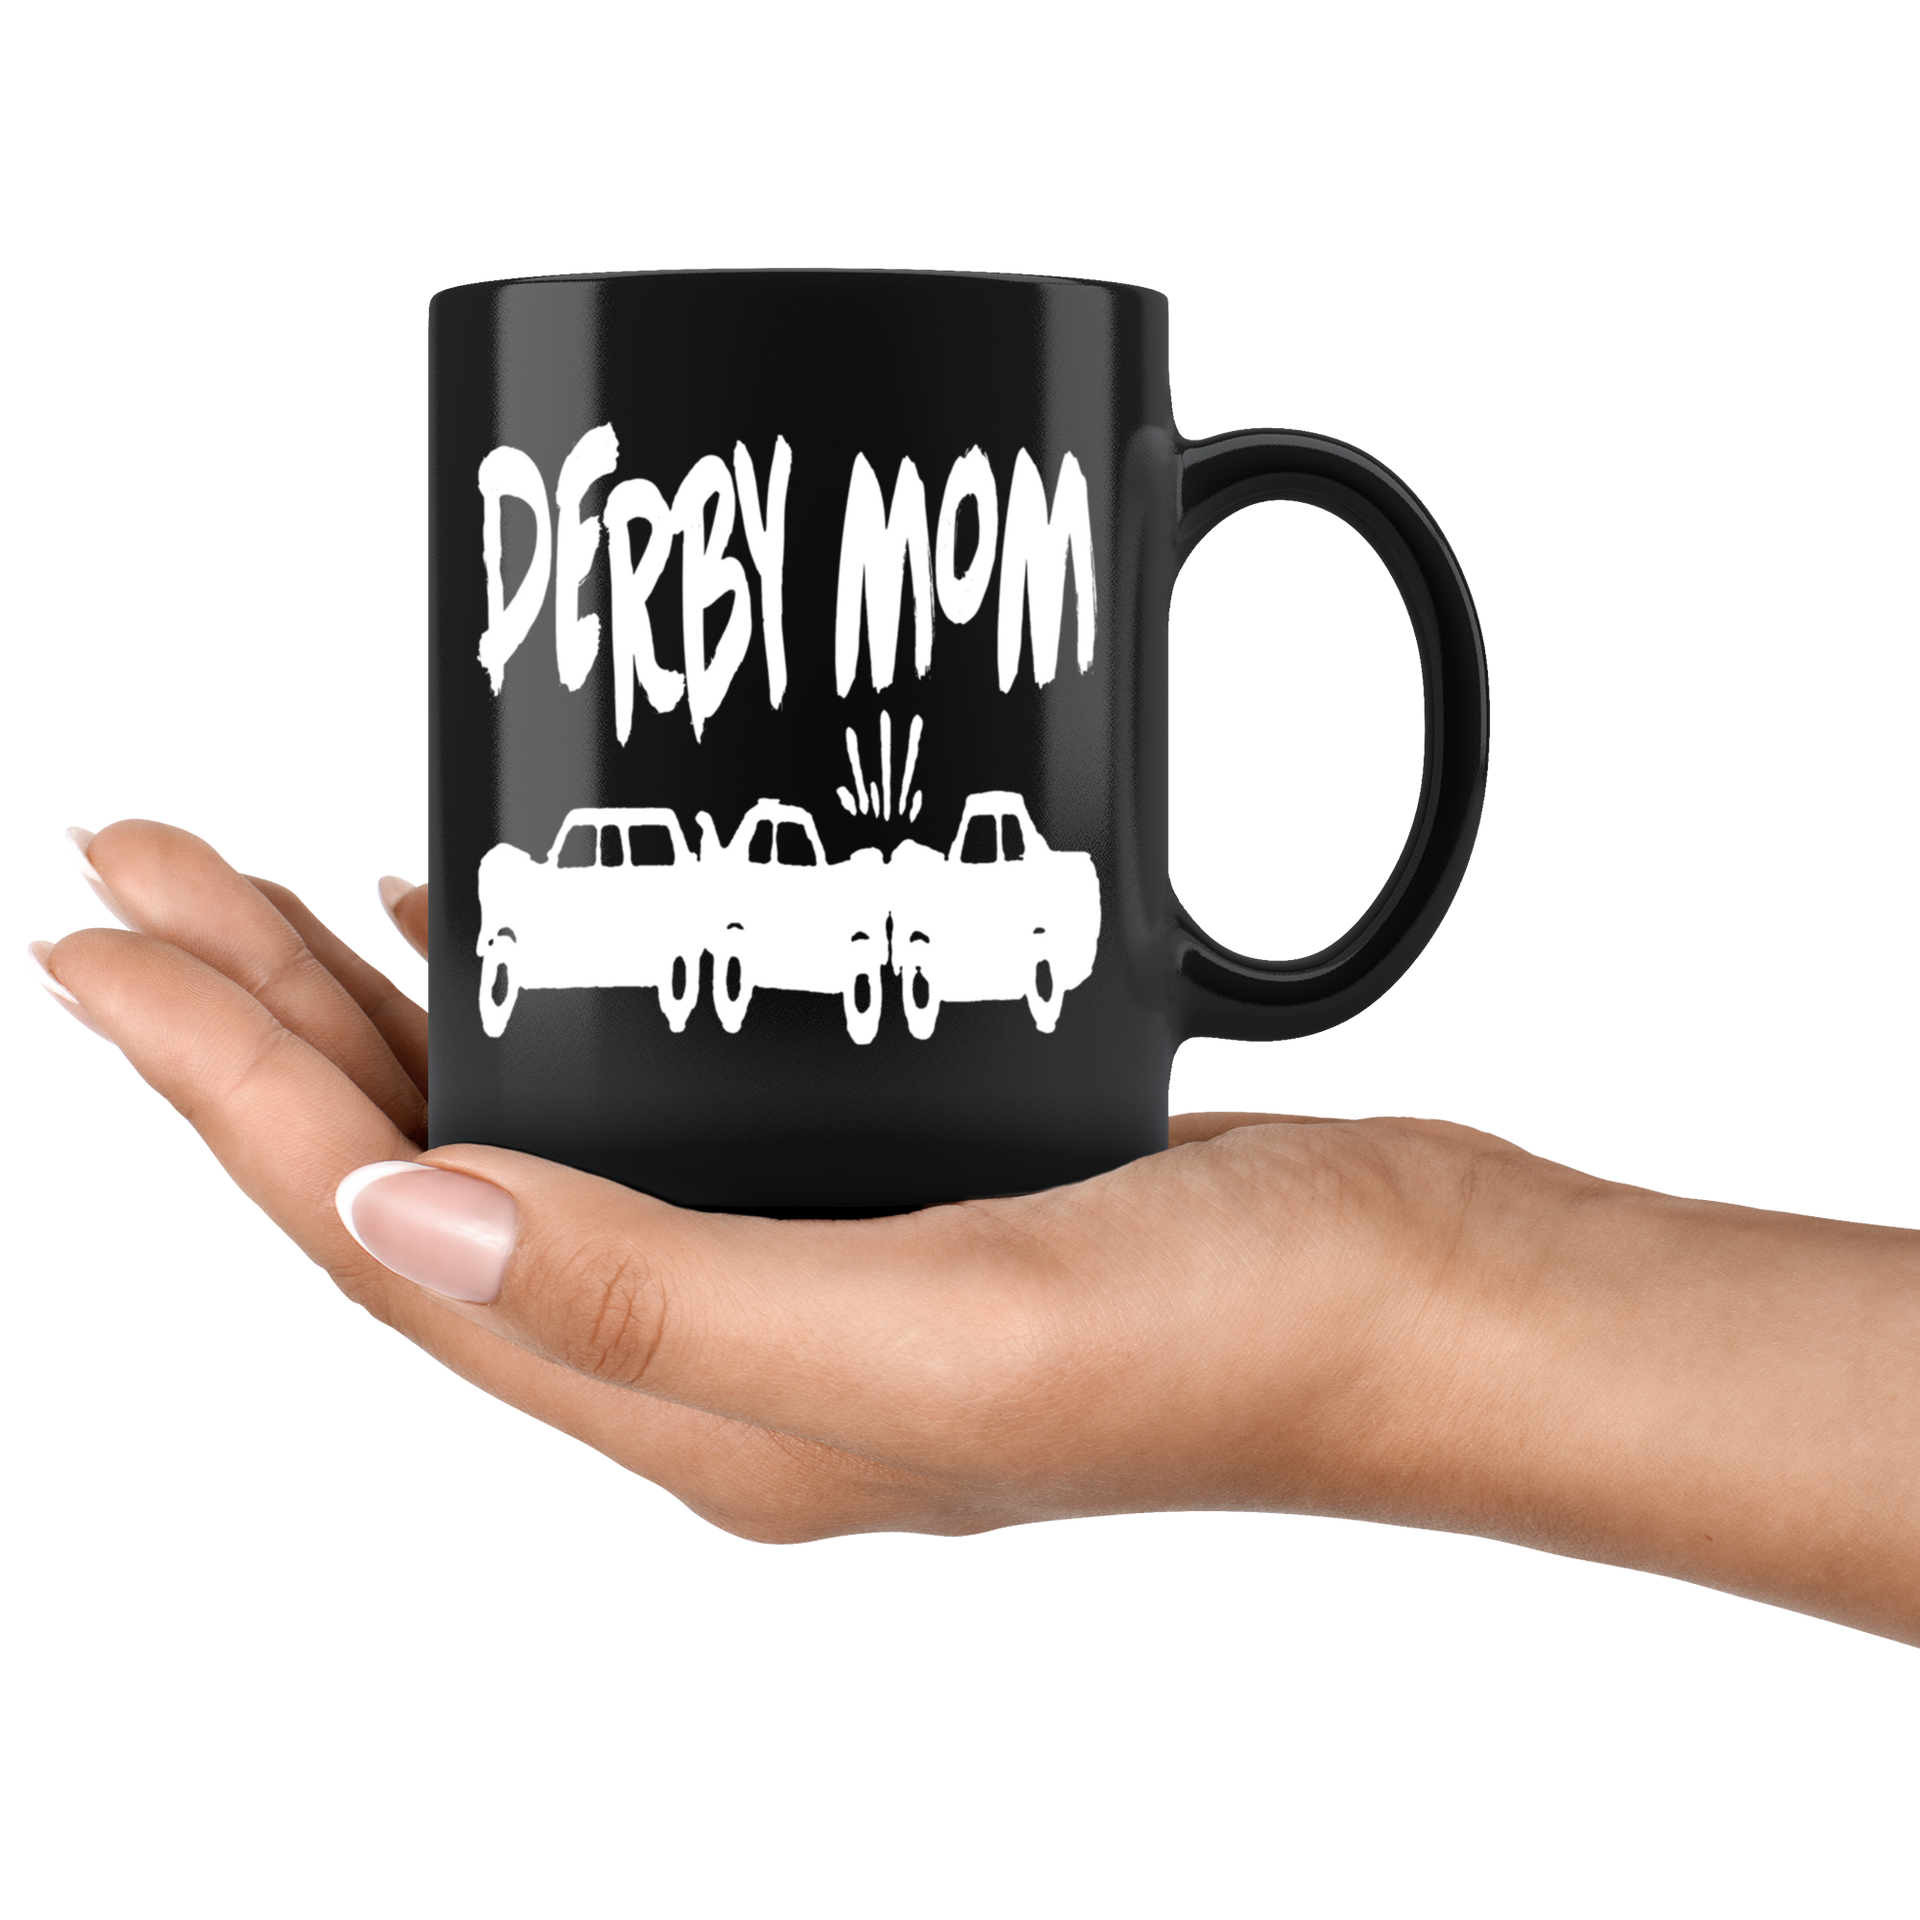 Demolition Derby Mom Mug